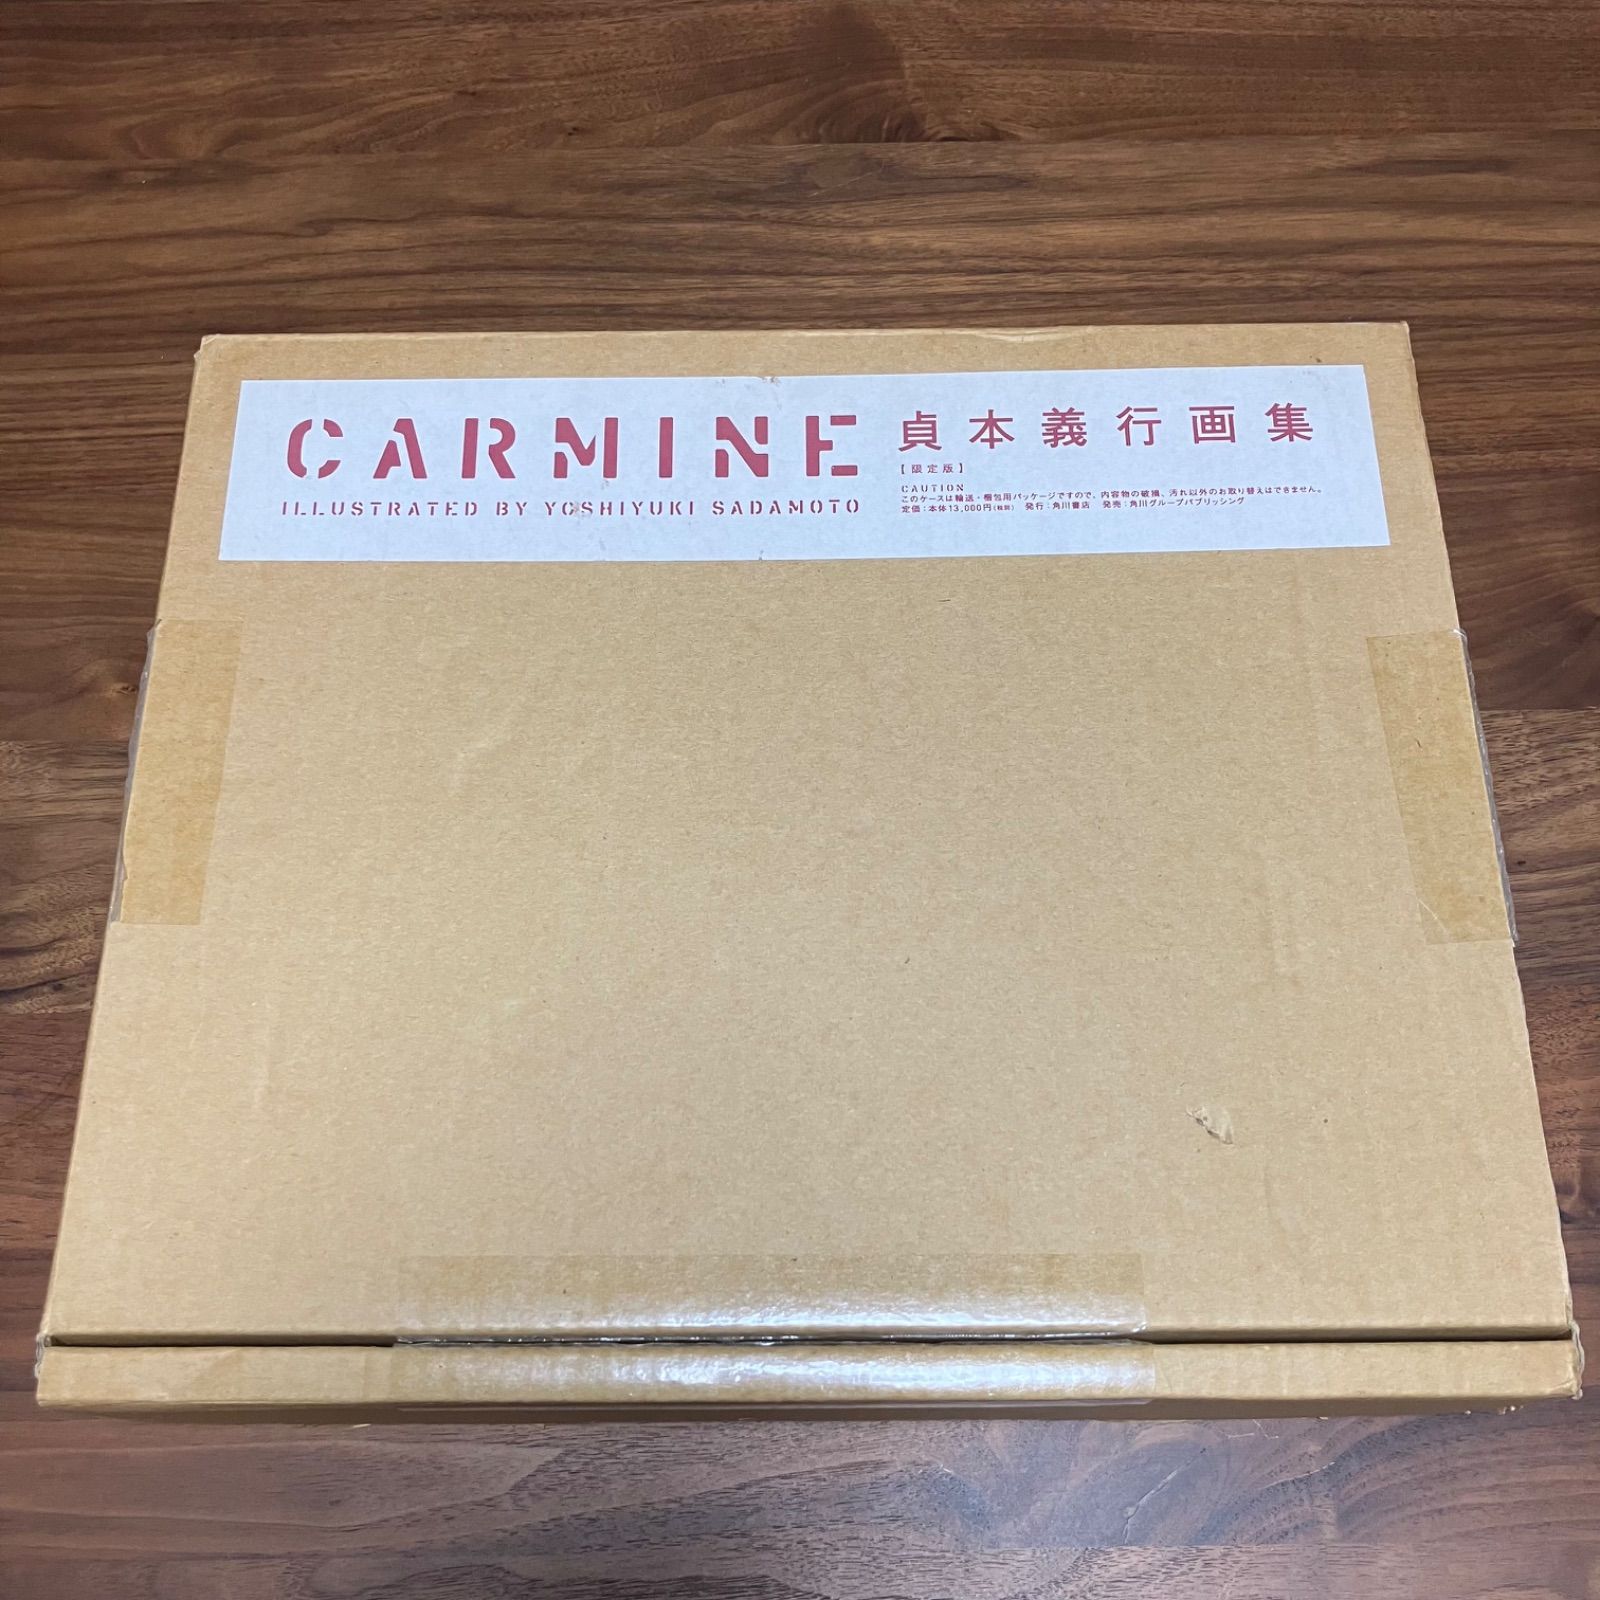 初回限定版】 CARMINE 貞本義行画集 限定版 カーマイン - キリン書店 